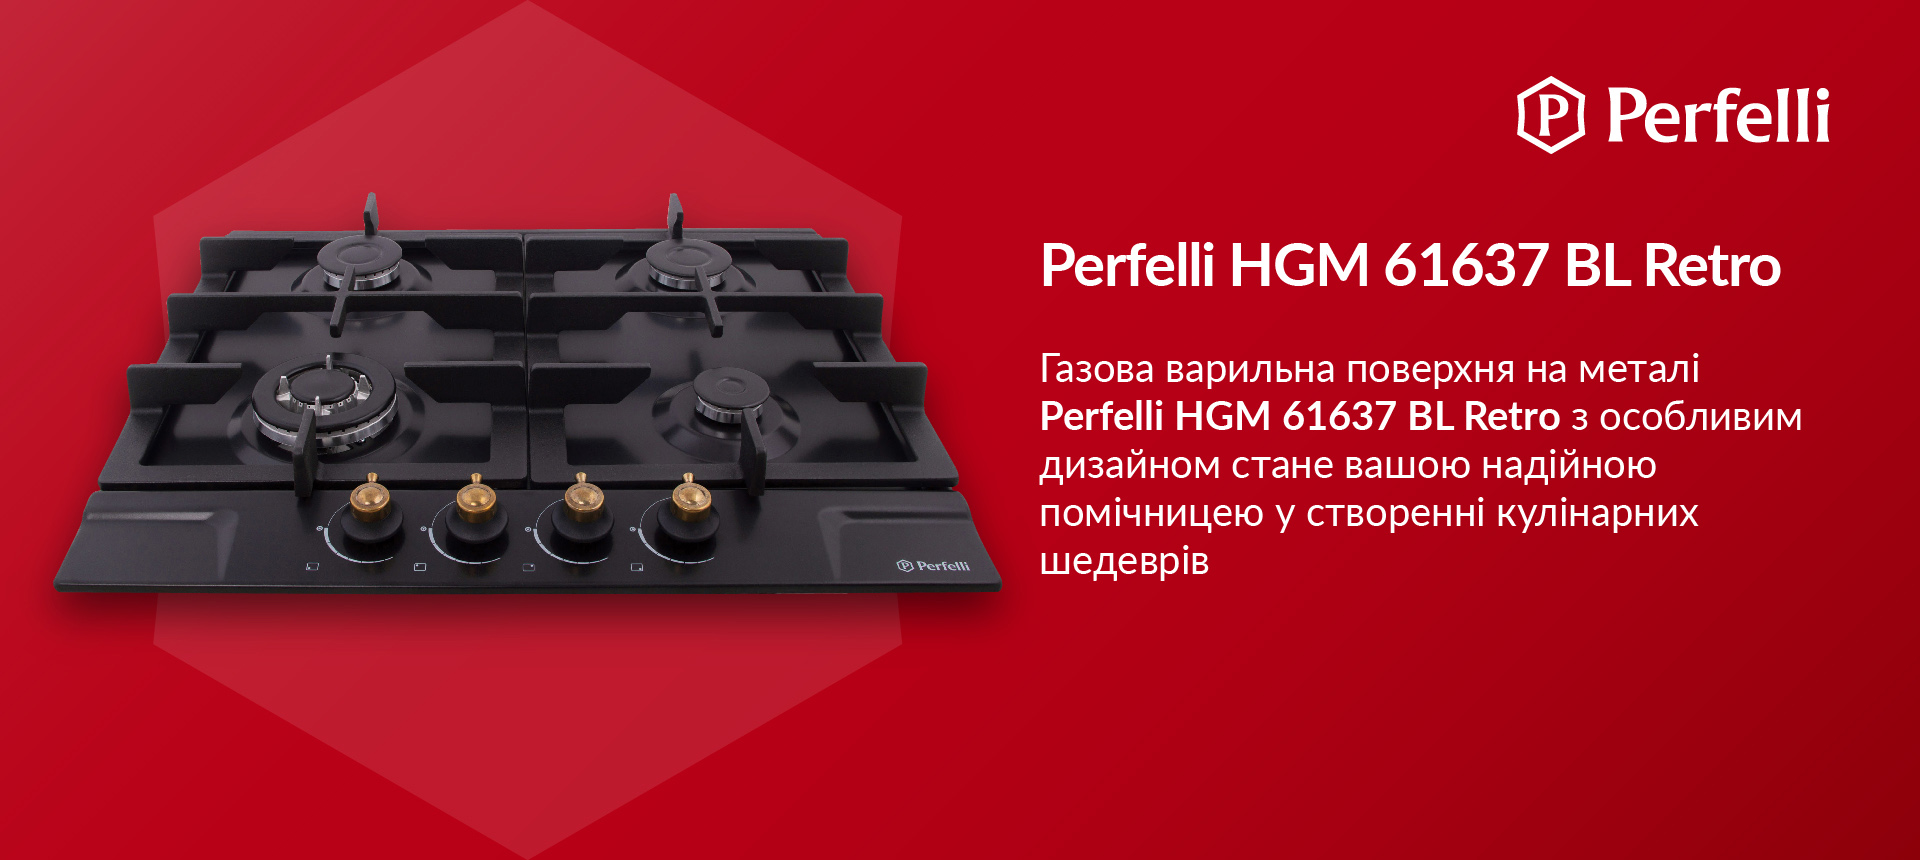 Газова варильна поверхня на металі Perfelli HGM 61637 BL RETRO з особливим дизайном стане вашою надійною помічницею у створенні кулінарних шедеврів